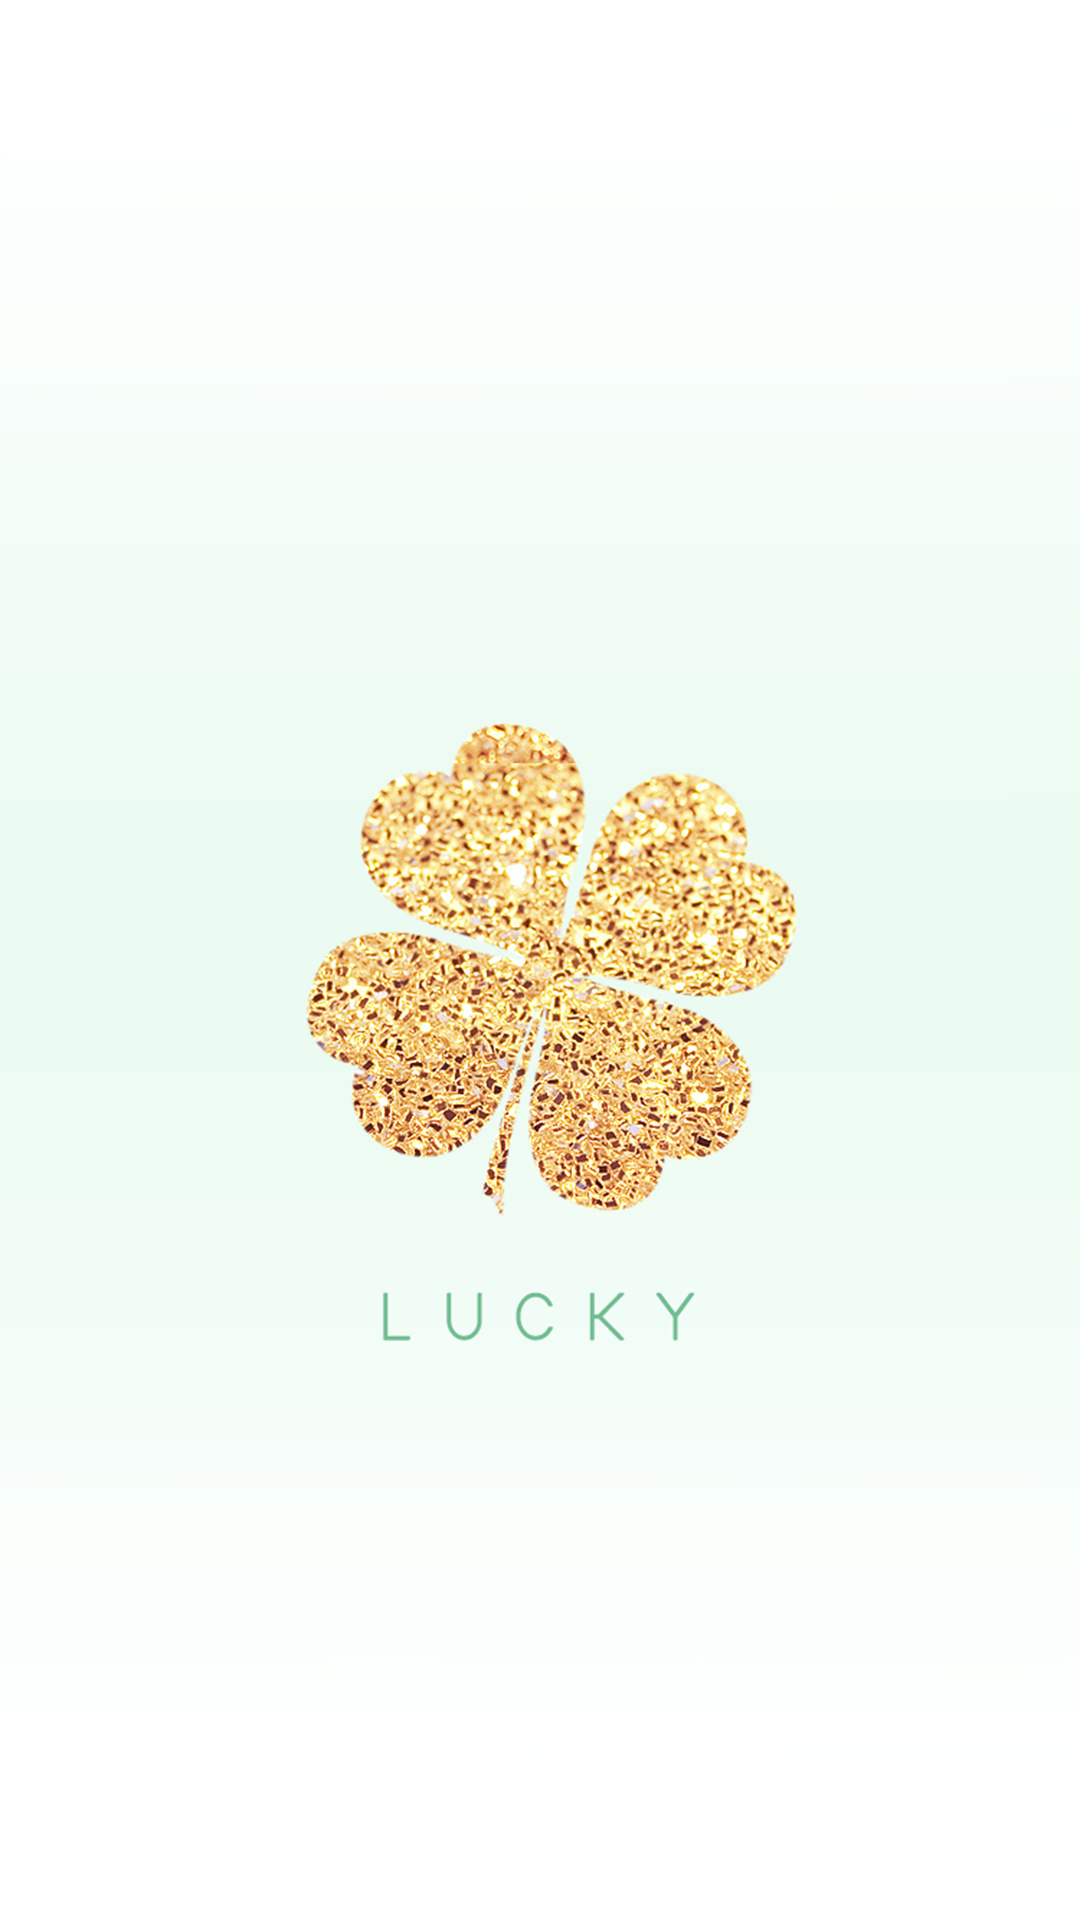 Irish Shamrock, Shamrock wallpapers, Irish symbol, Lucky charm, 1080x1920 Full HD Handy